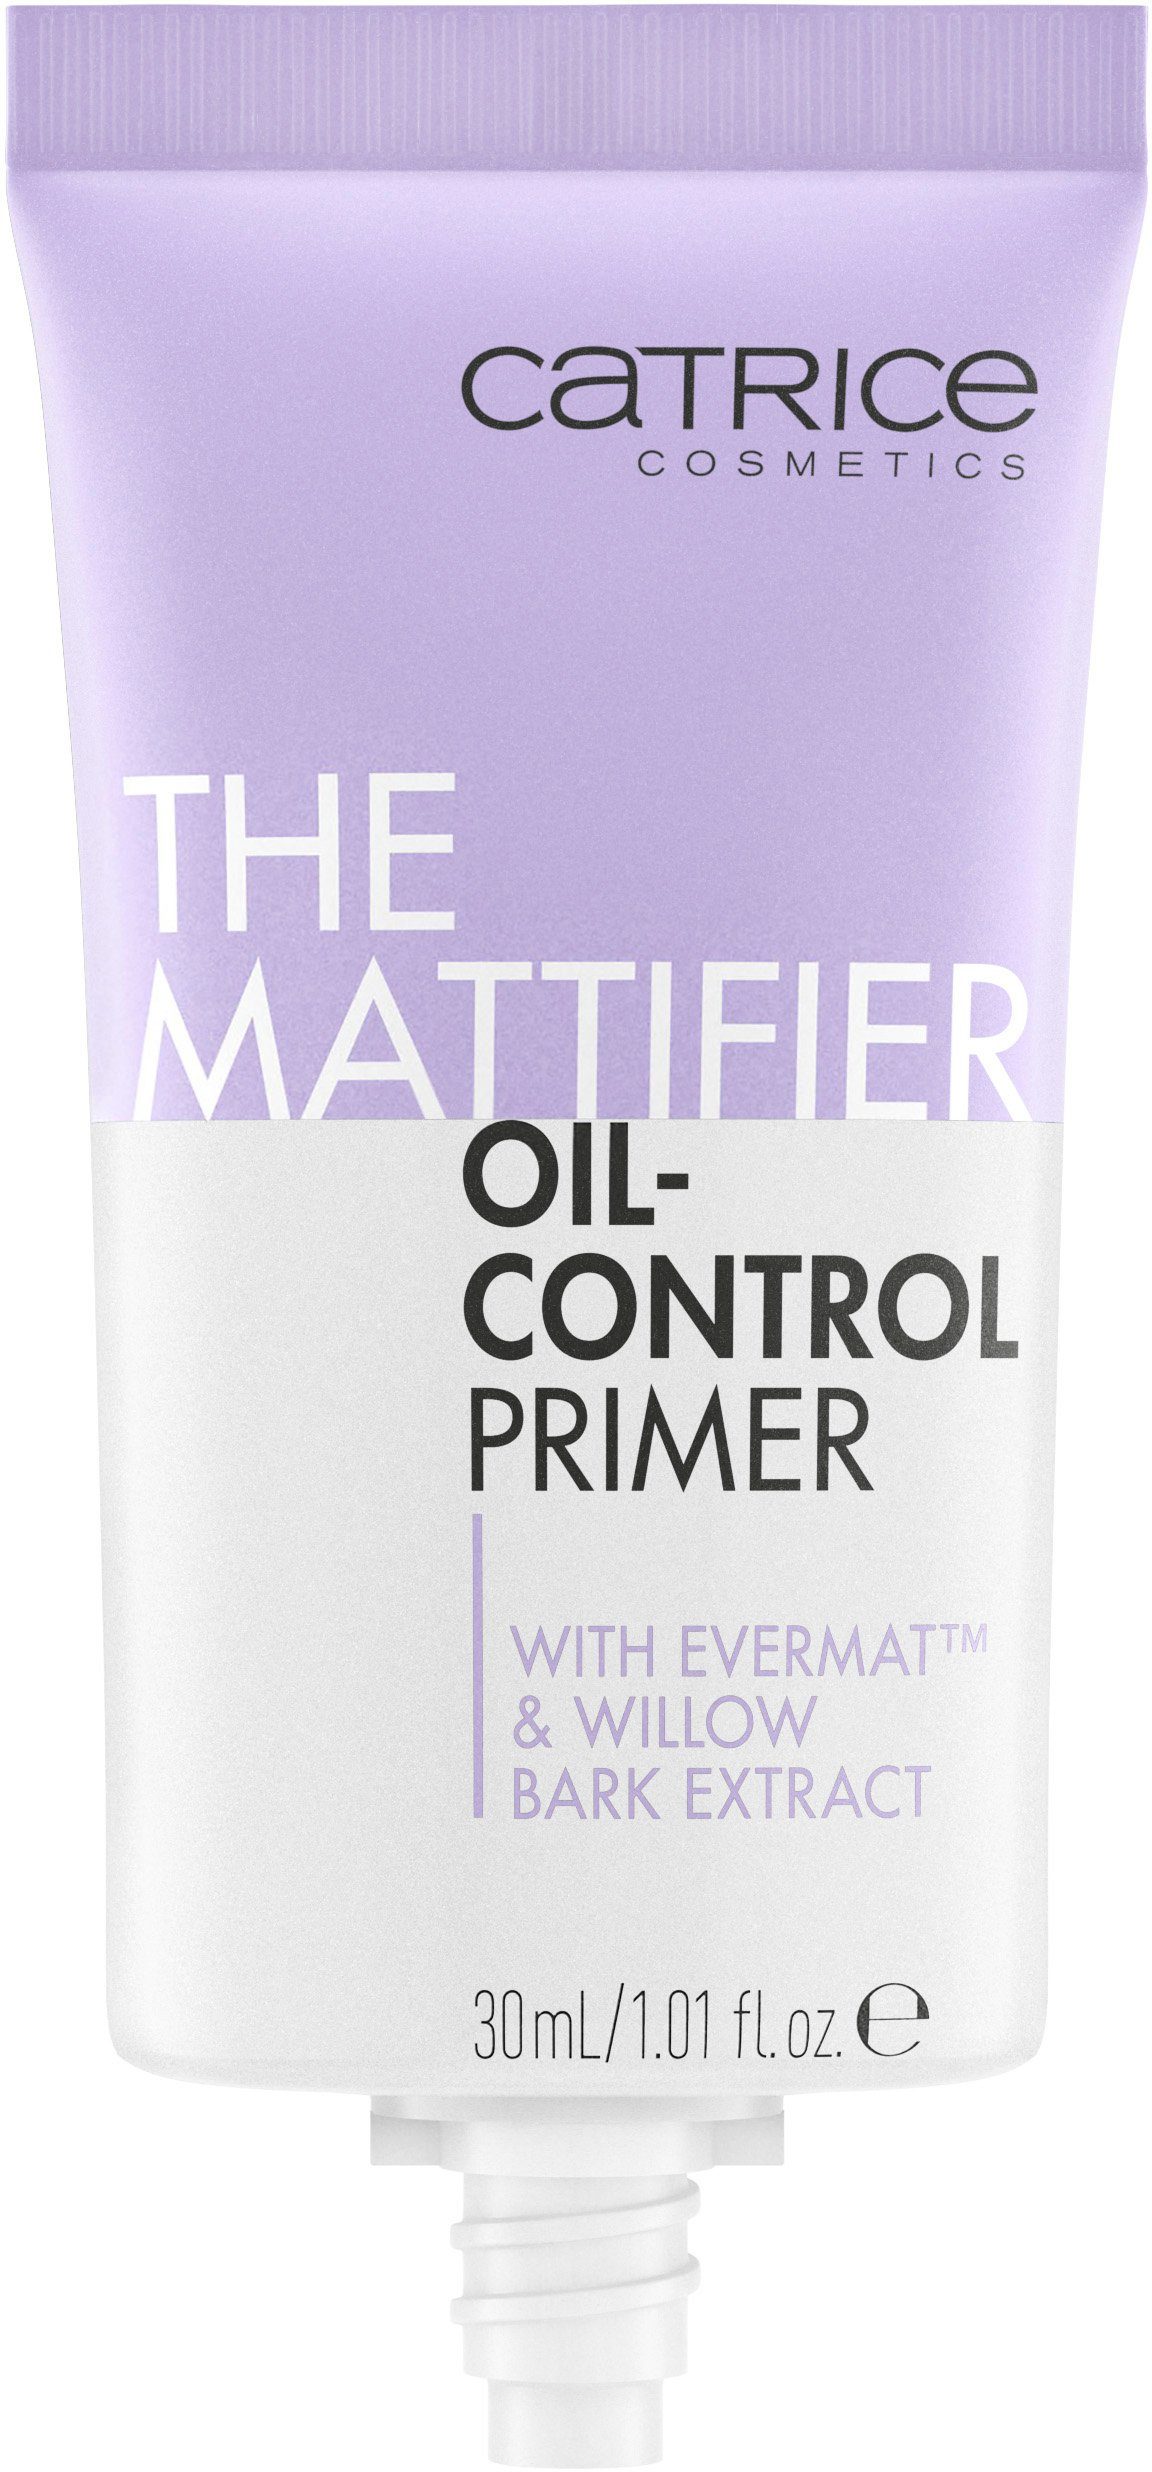 3-tlg. Oil-Control The Primer Mattifier Primer, Catrice